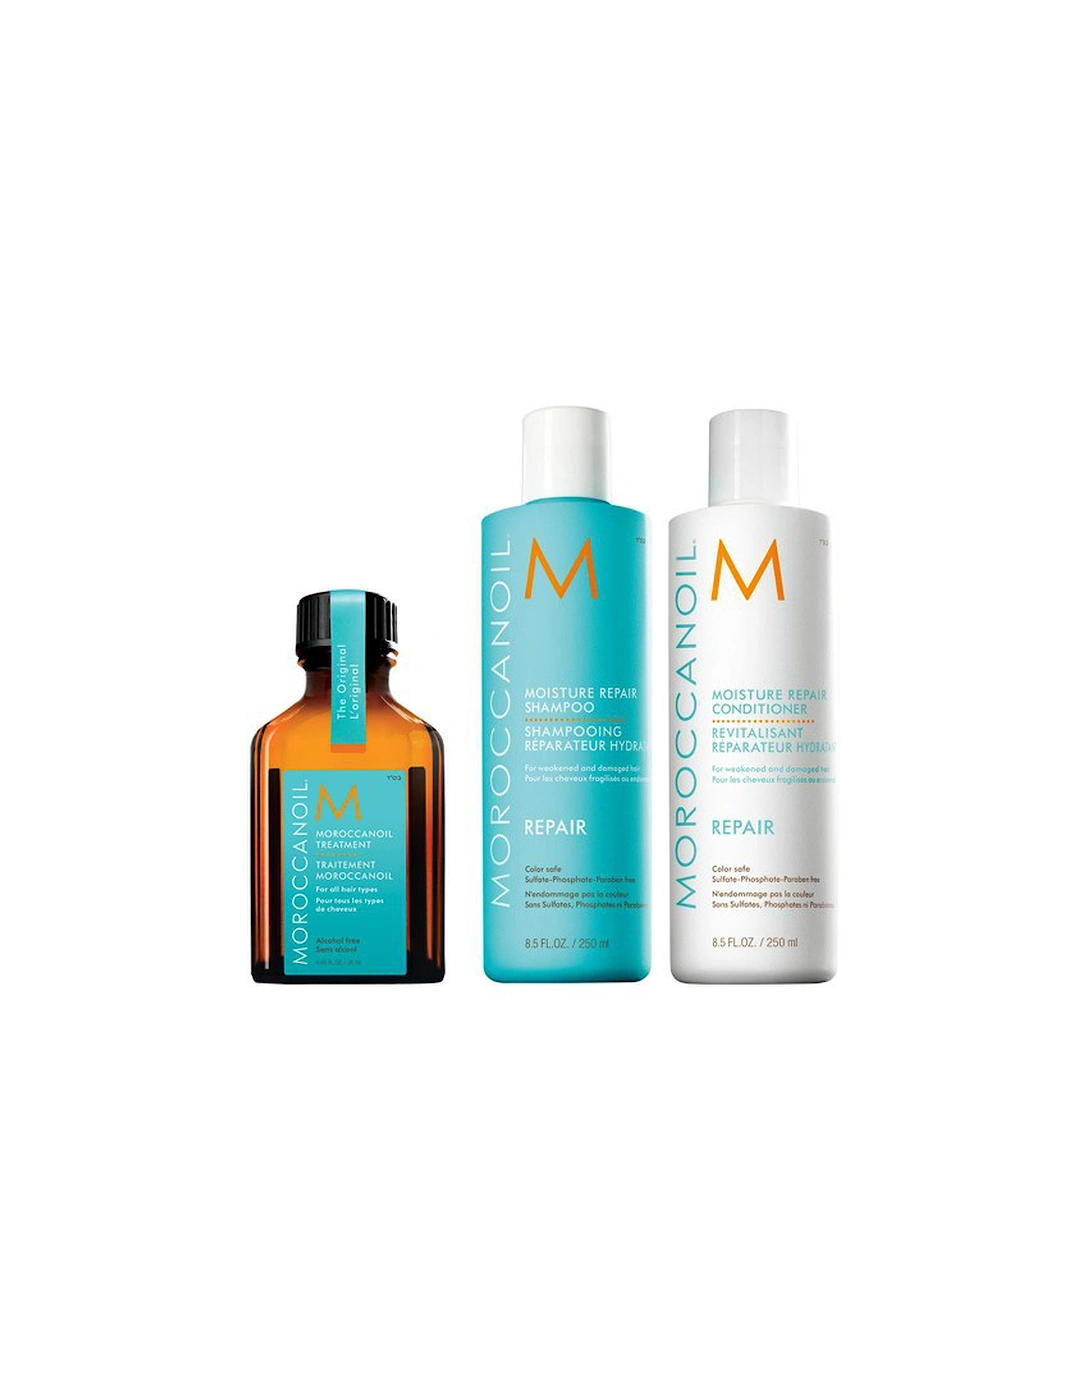 Moroccanoil Moisture Repair Shampoo, Conditioner and Treatment Trio - Moroccanoil - Moroccanoil Moisture Repair Shampoo, Conditioner and Treatment Trio - Sinead - Moroccanoil Moisture Repair Gift Set (3 products) - Cazza, 2 of 1